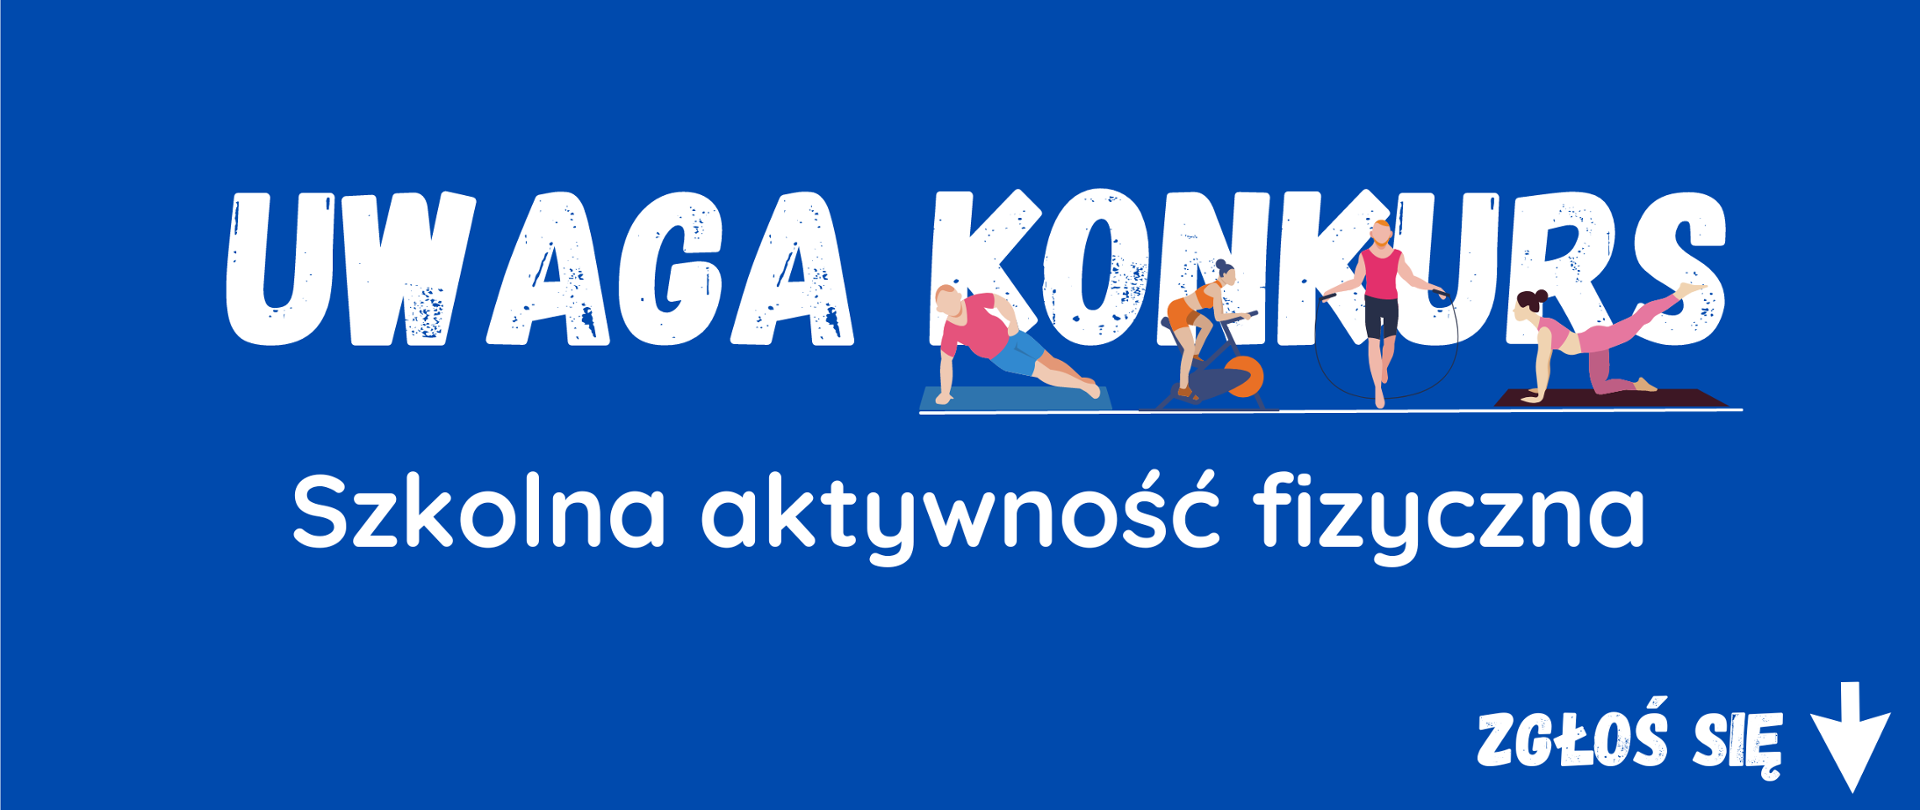 Banner na niebieskim tle z napisami: UWAGA KONKURS- Szkolna aktywność fizyczna i zgłoś się
Na tle napisu konkurs widoczne grafiki z ćwiczącymi osobami. 